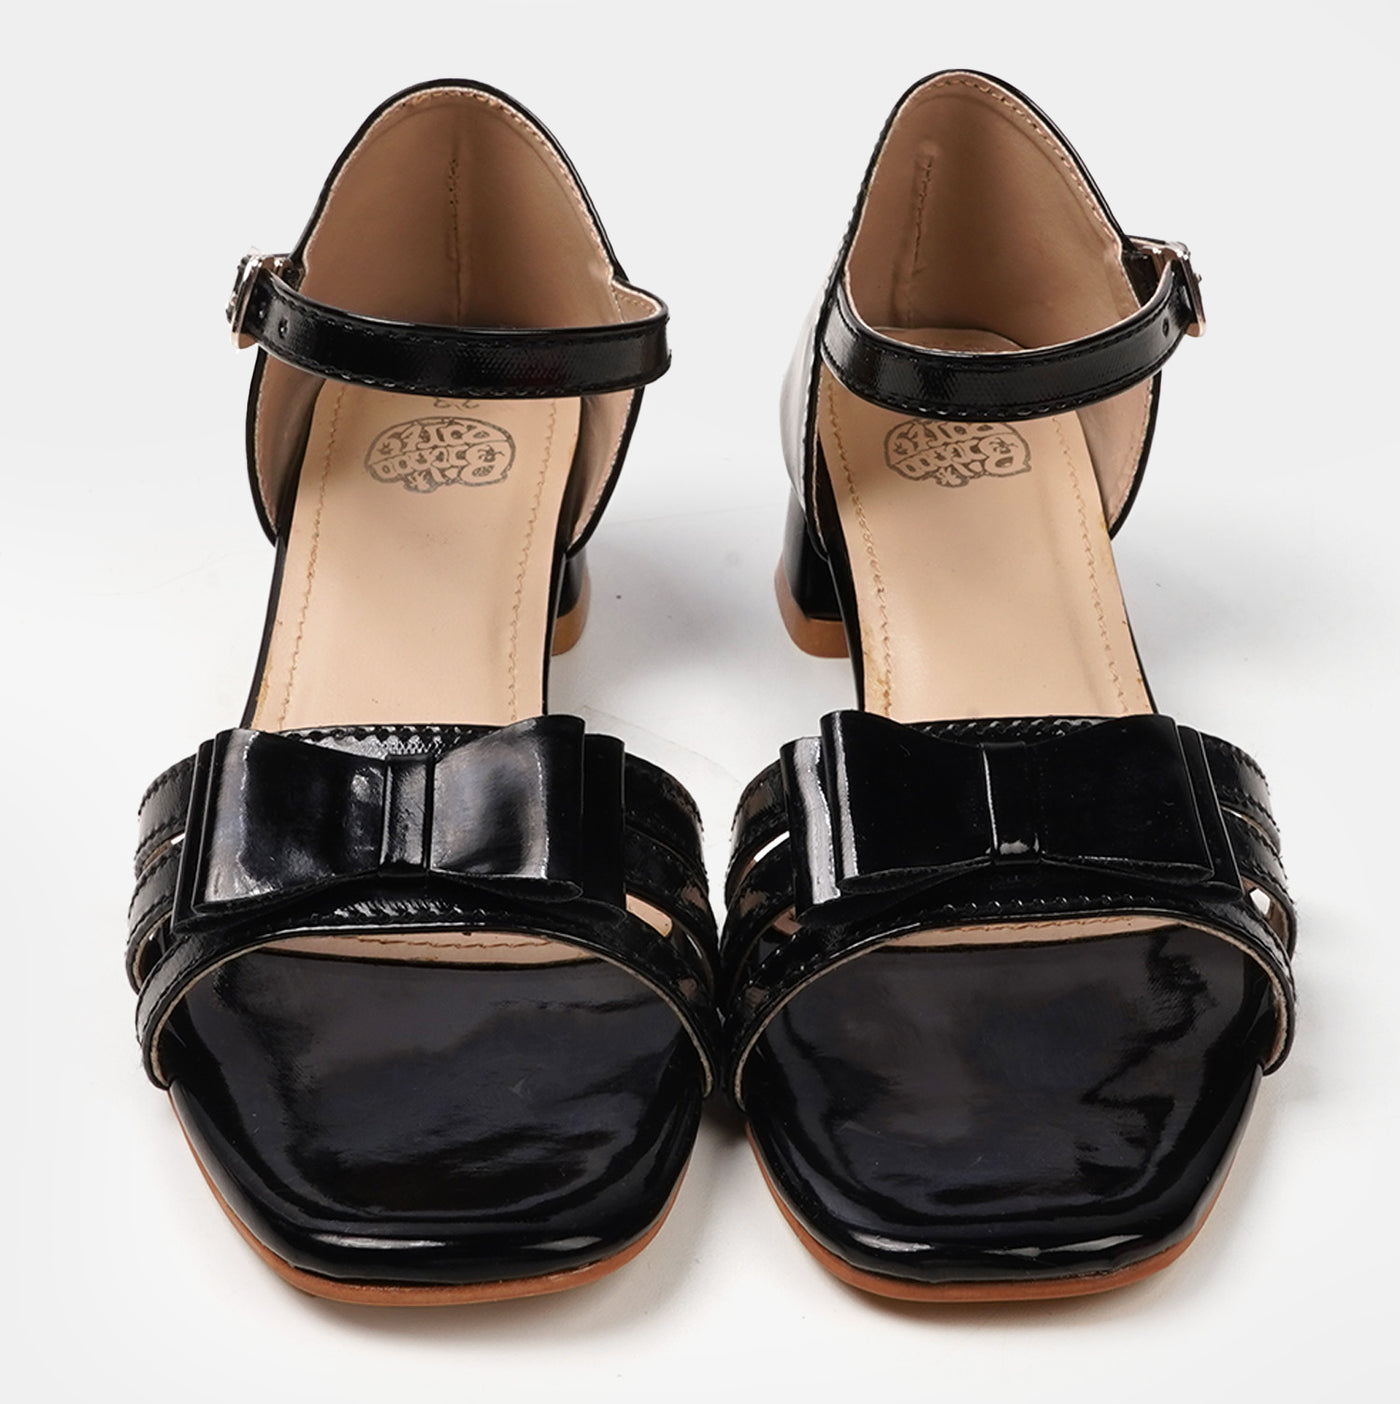 Girls Sandal Heels SD-13 - BLACK